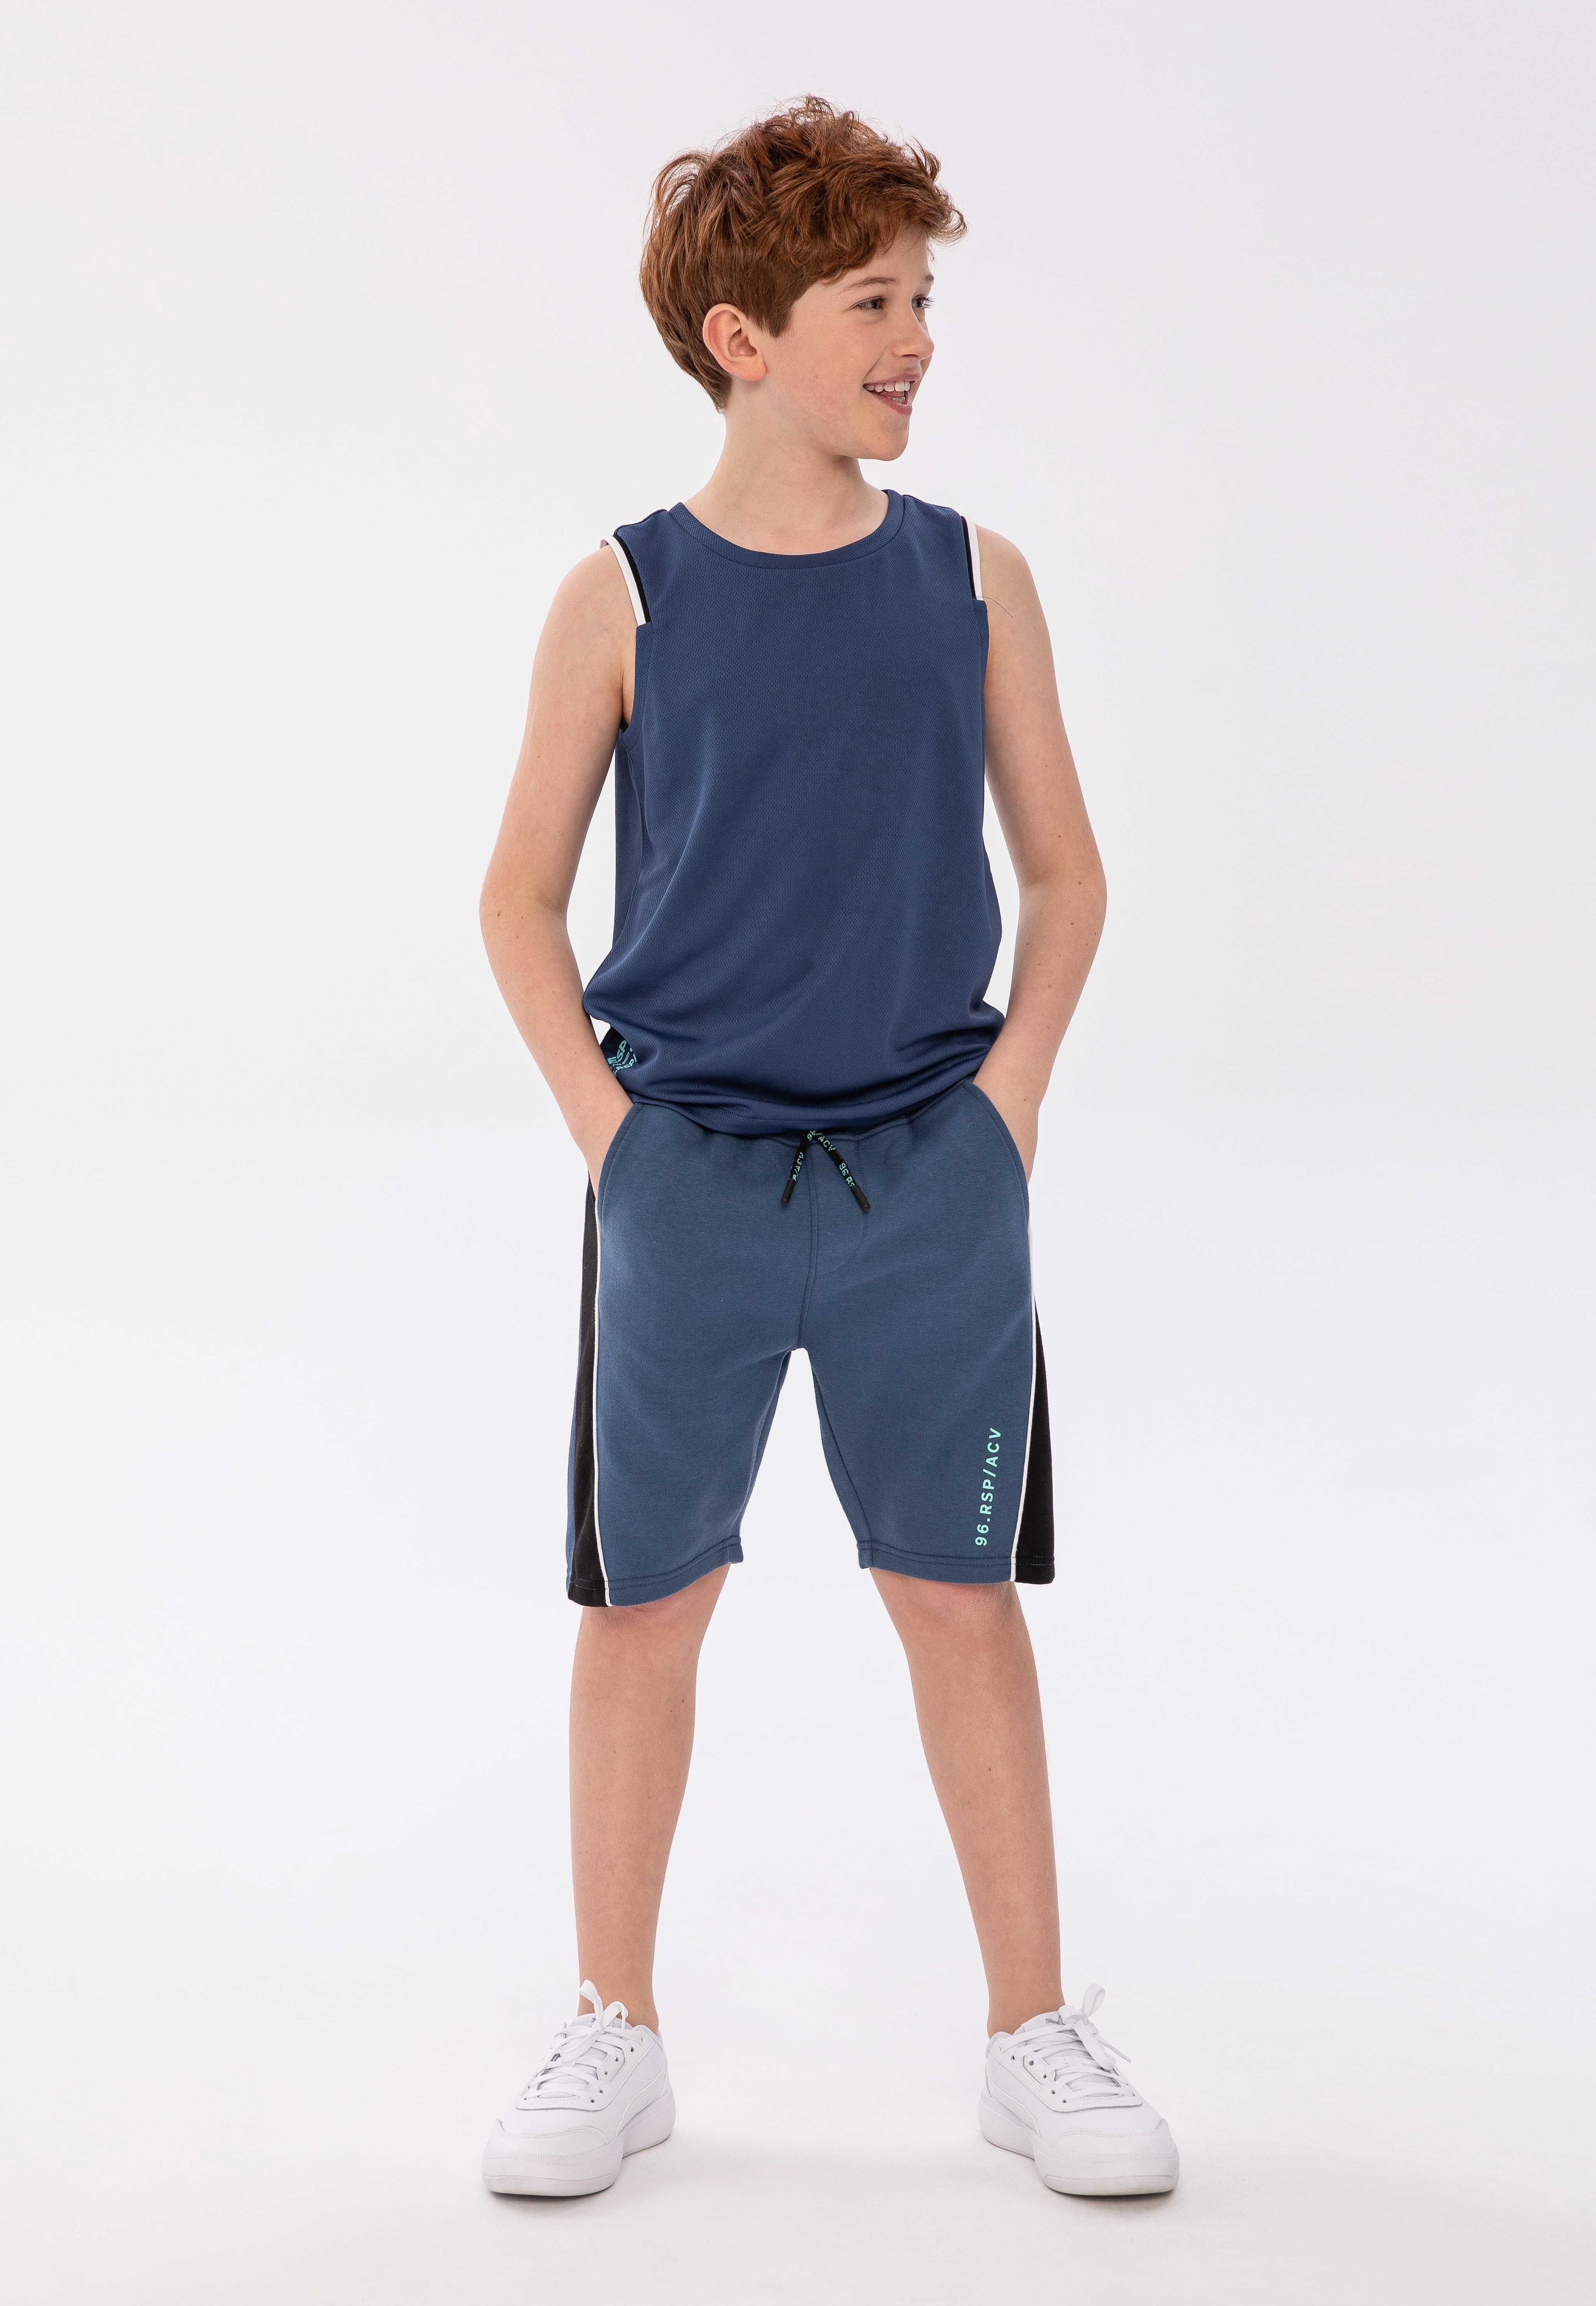 MINOTI Sweatshorts Shorts (3y-14y)